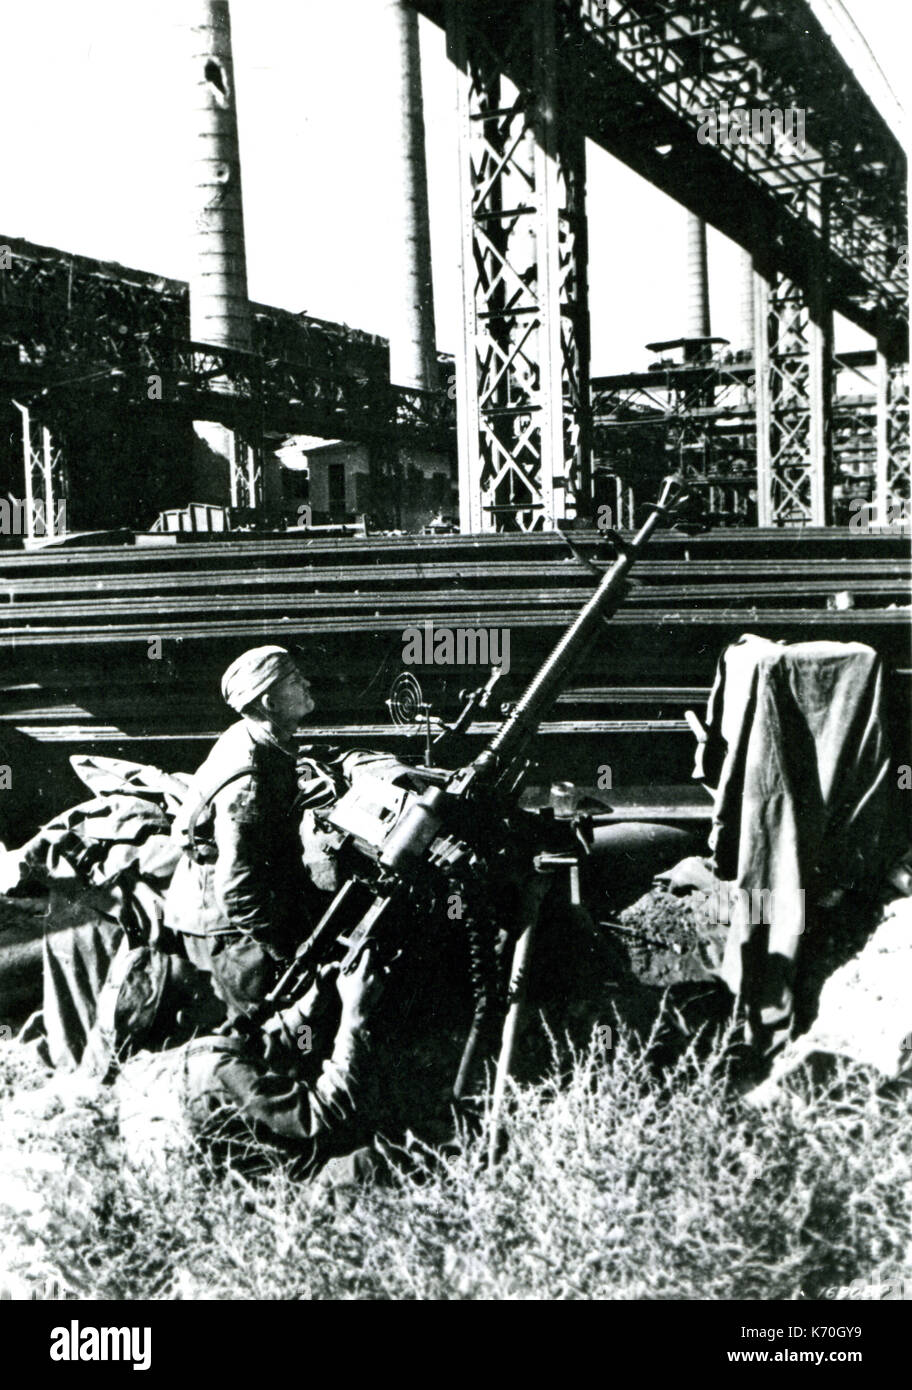 07.11.1942, Stalingrad - Stalingrad zielüberwachung gunners Schutz einer Anlage von einem Air-Raid. Stockfoto